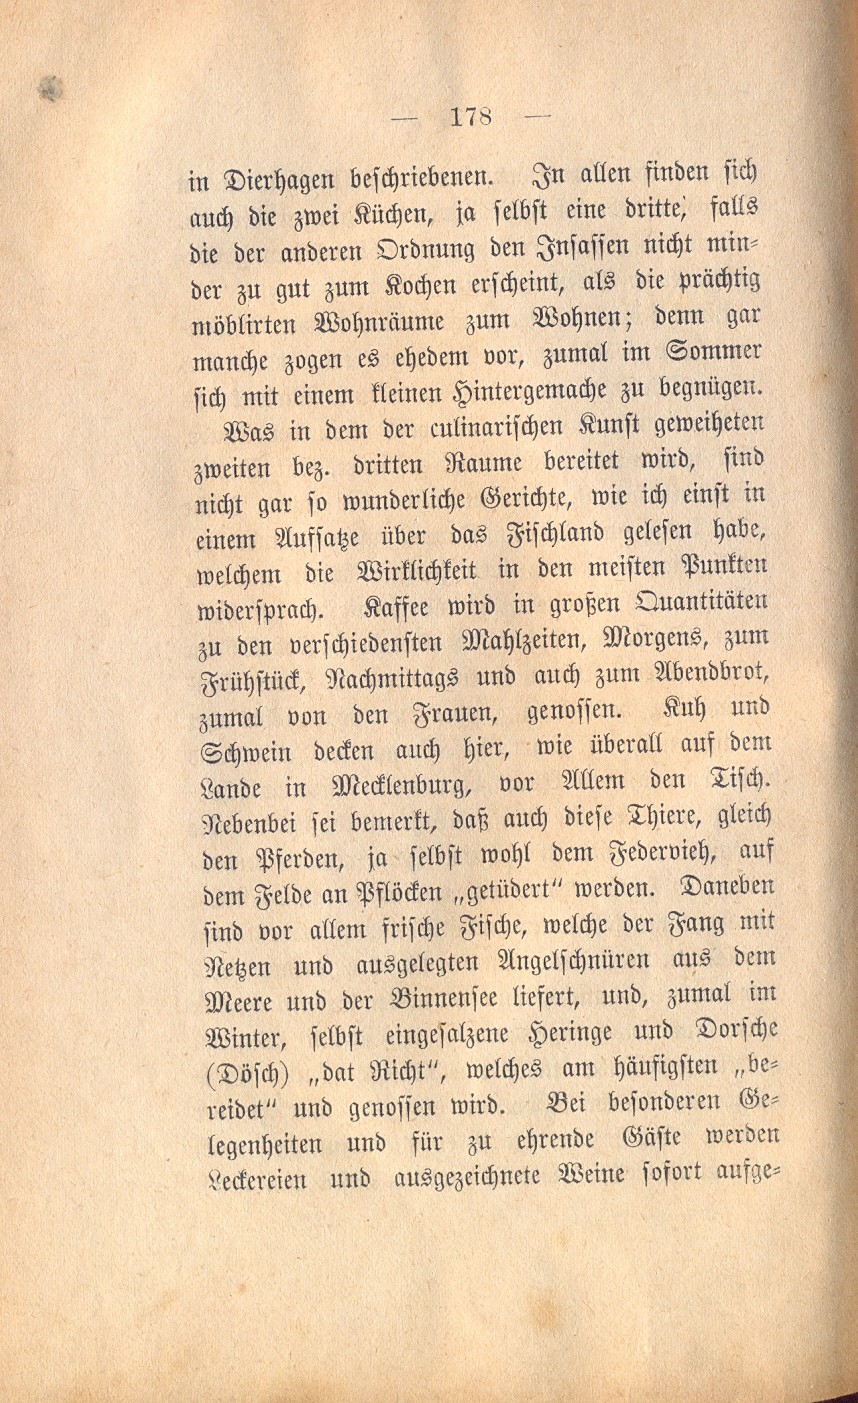 Fischland Dolberg S. 178